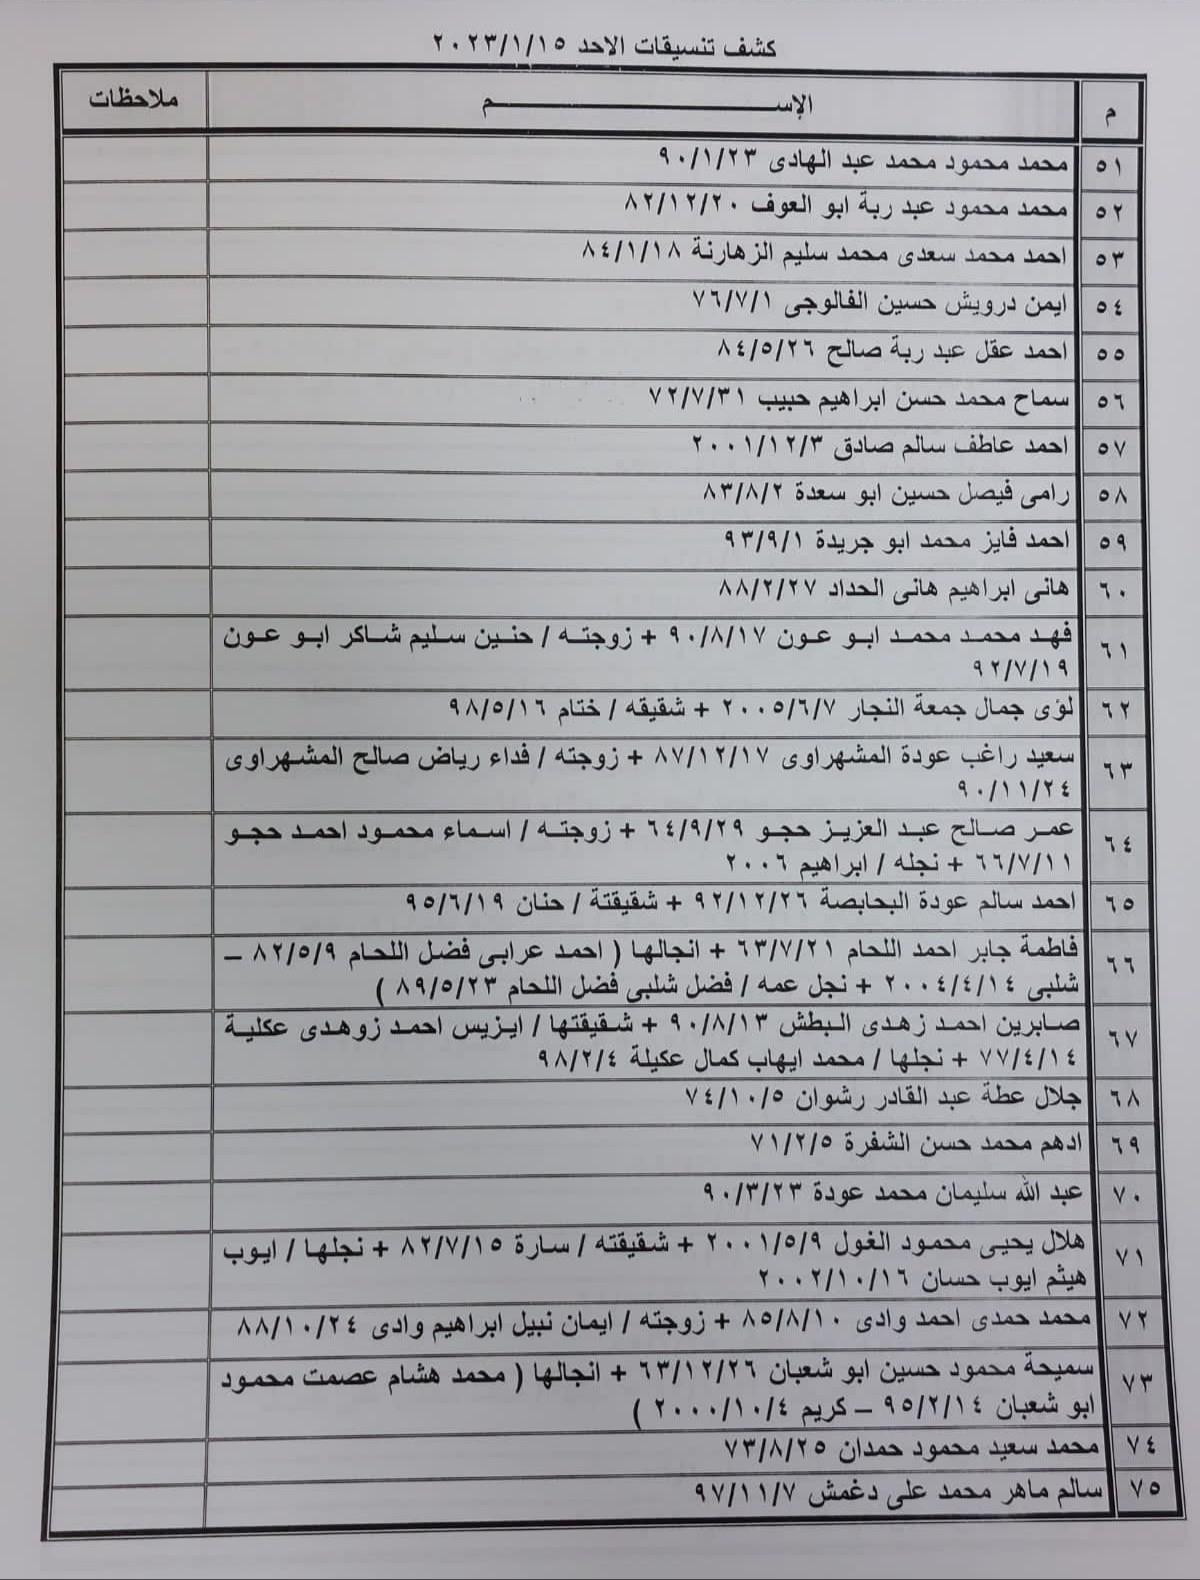 بالأسماء: كشف "التنسيقات المصرية" للسفر عبر معبر رفح الأحد 15 يناير 2023